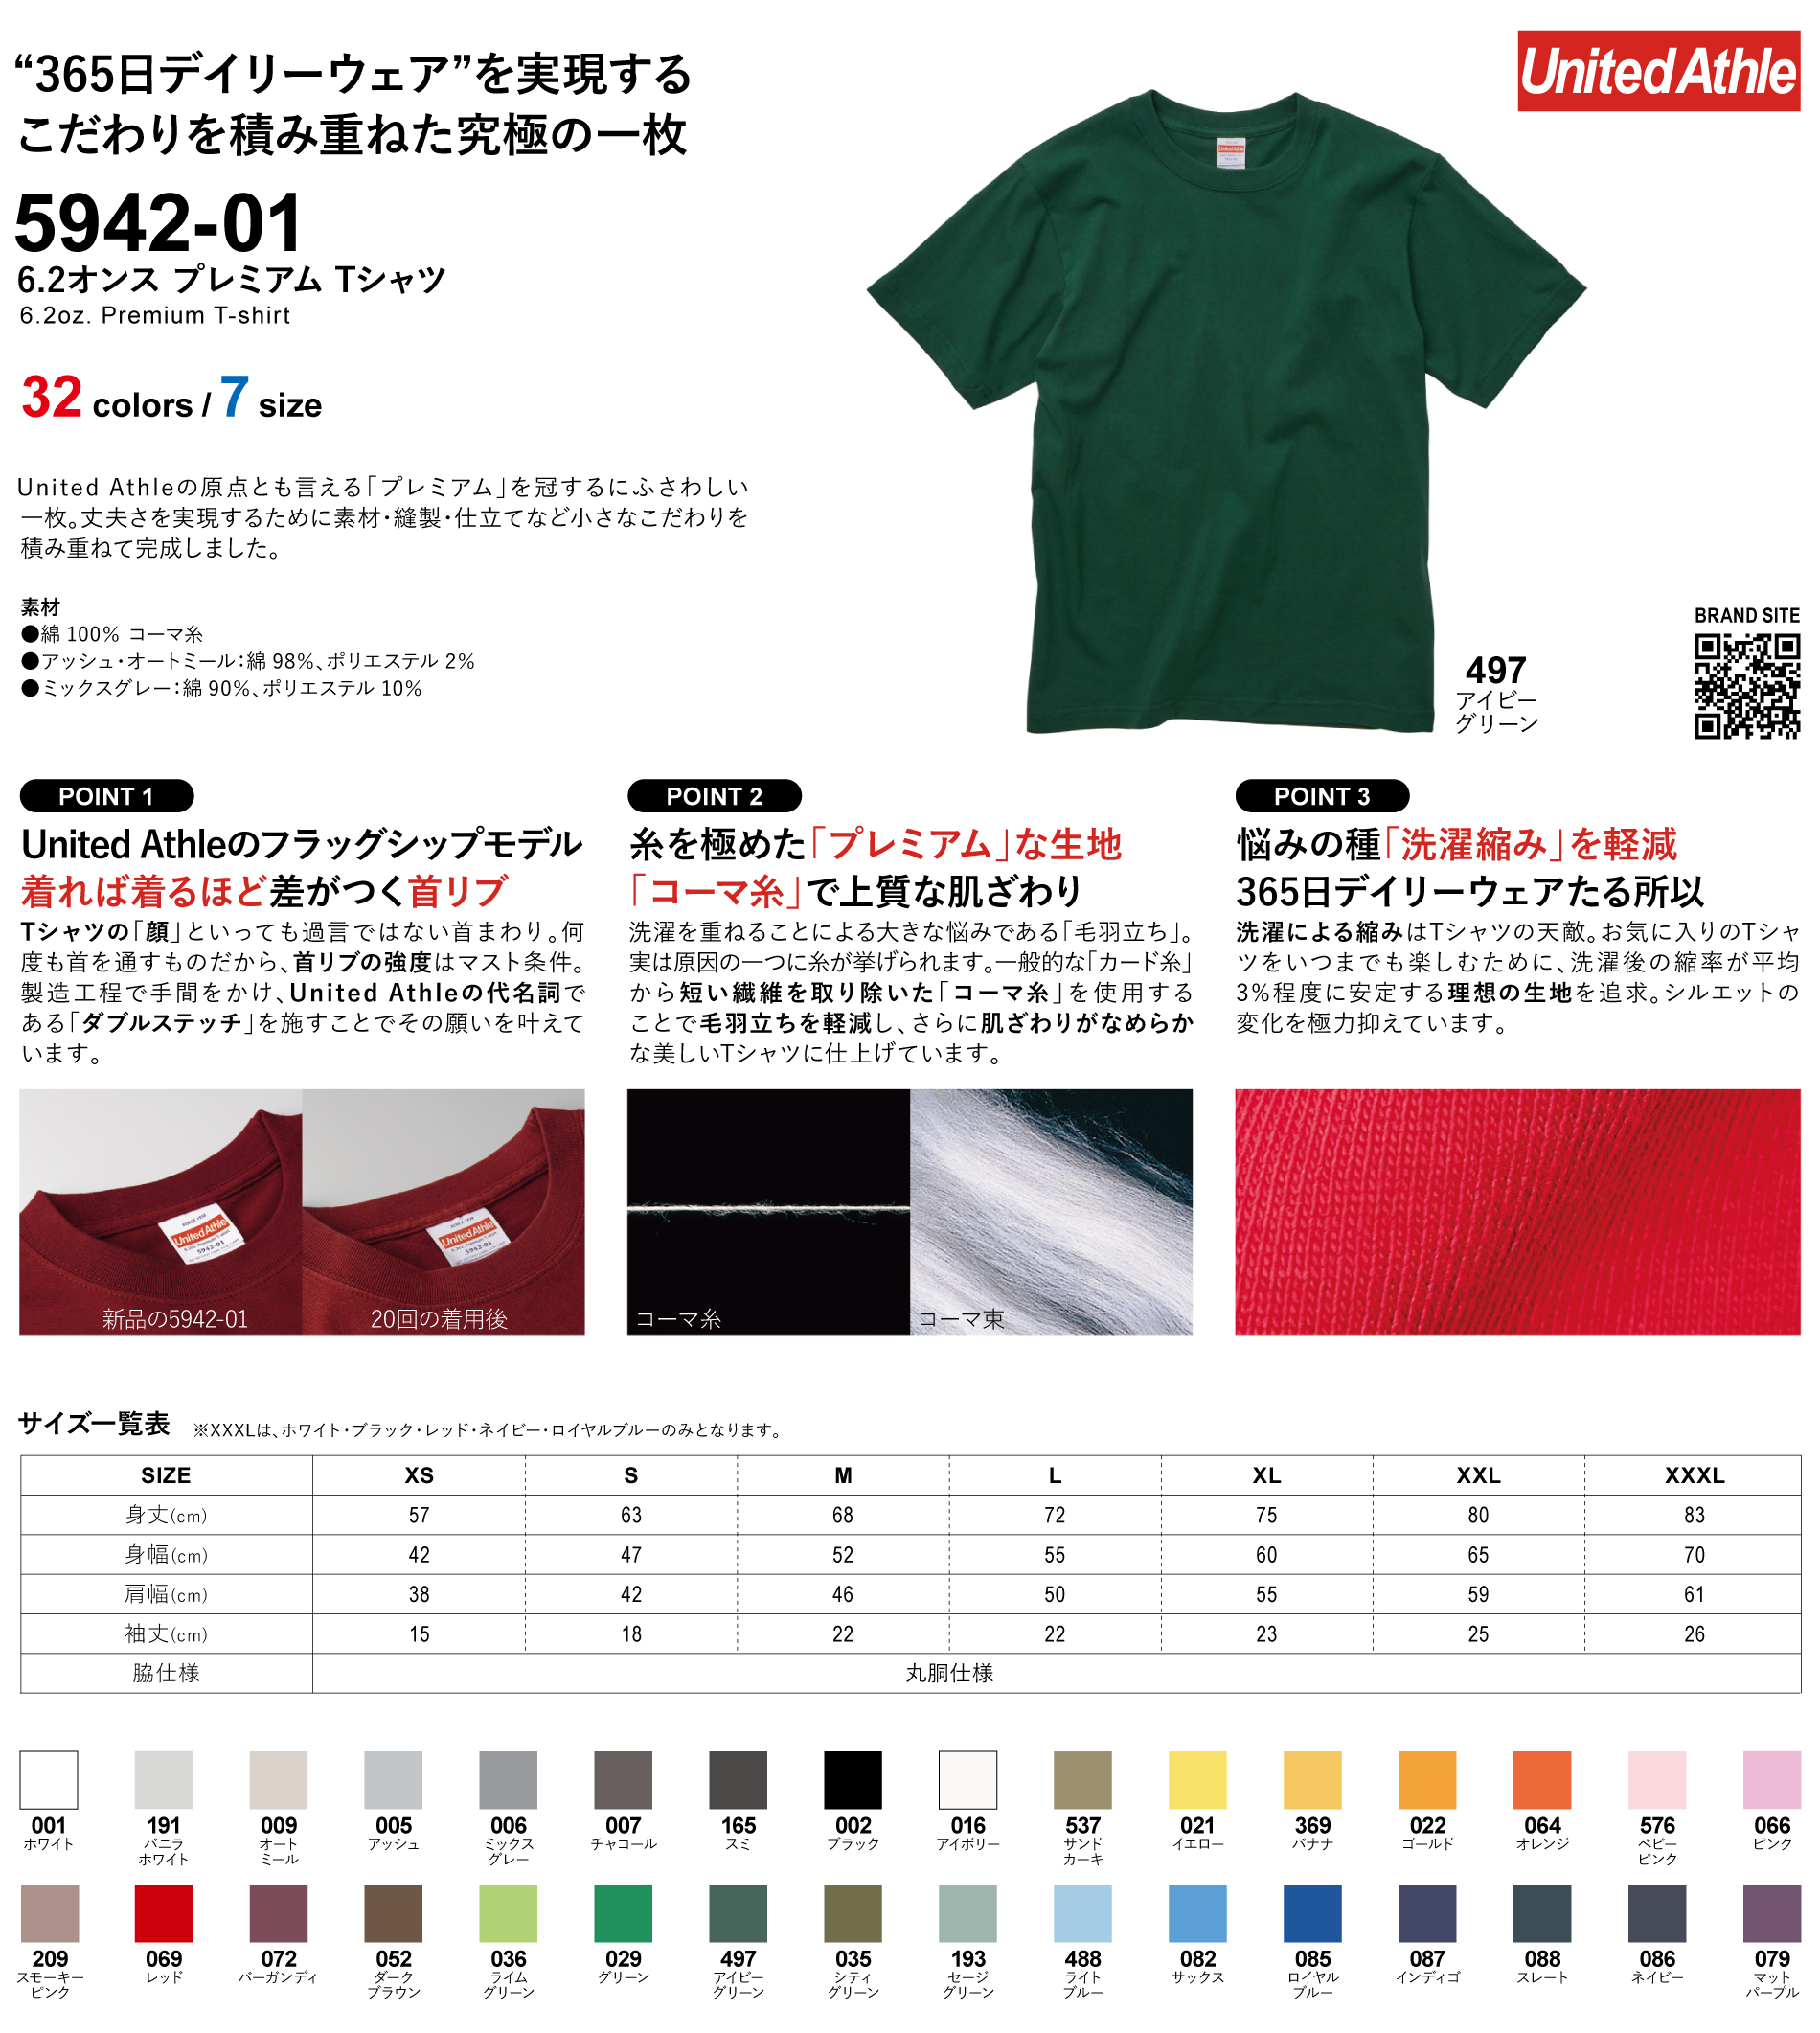 ユナイテッドアスレ-6.2オンス-プレミアム-Tシャツ-Style-No.-5942-01詳細ページ